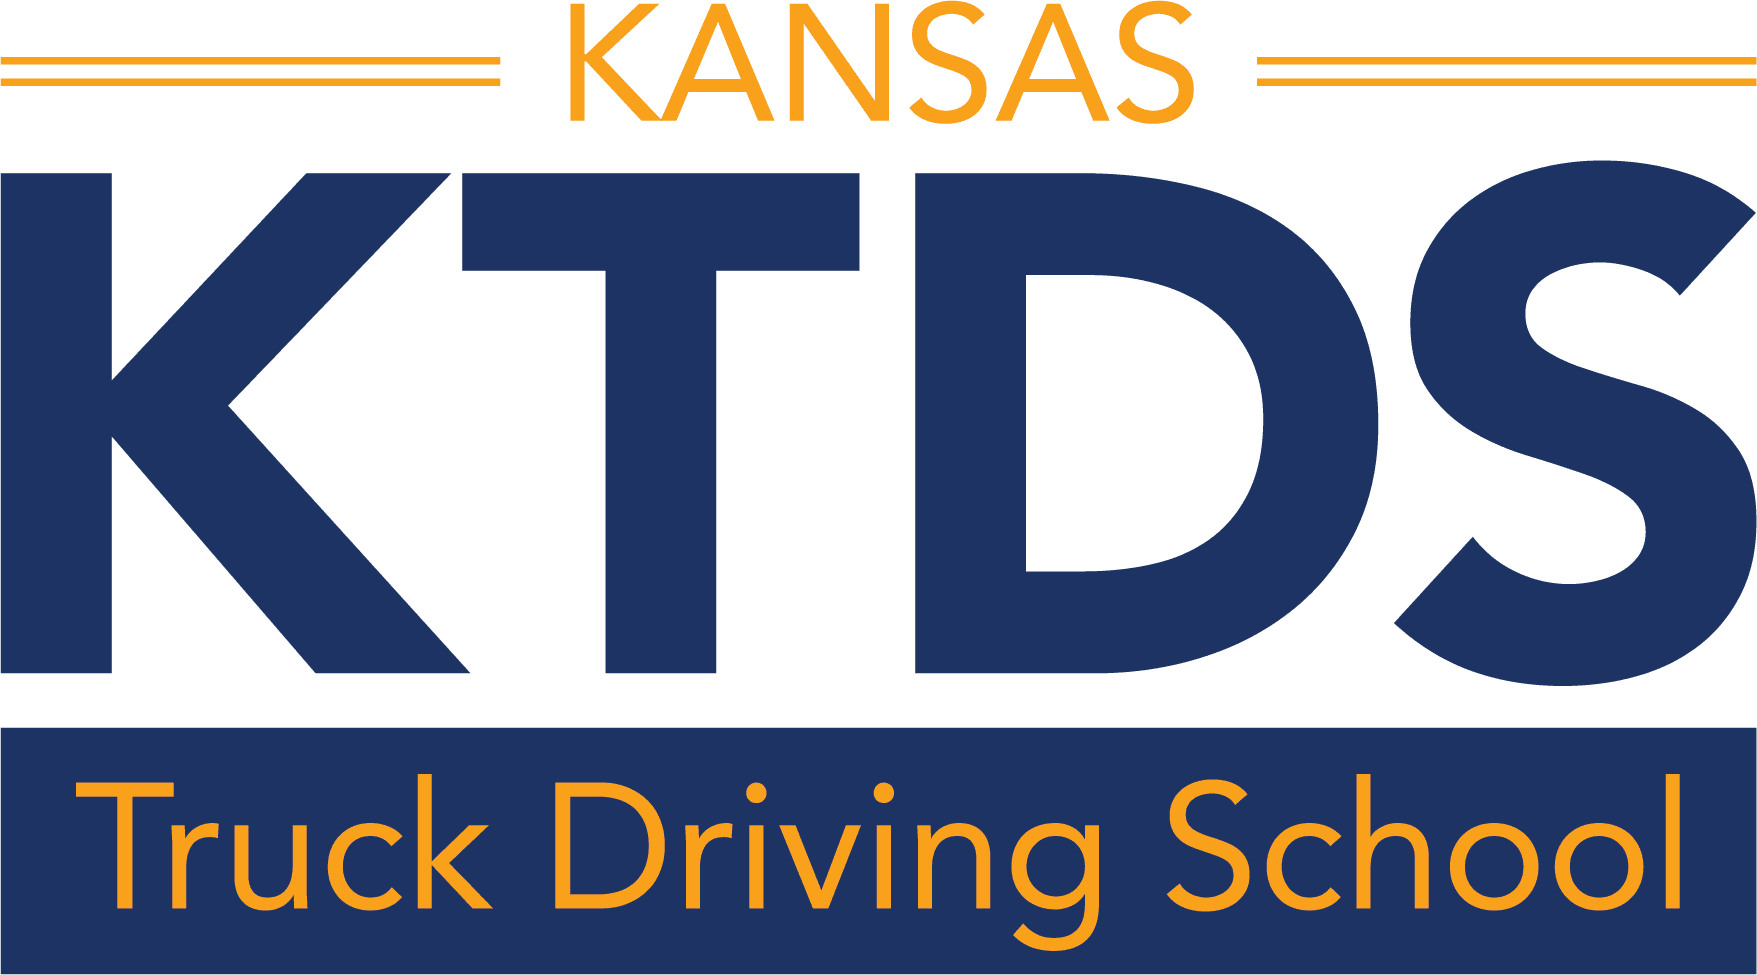 Kansas Truck Driving School